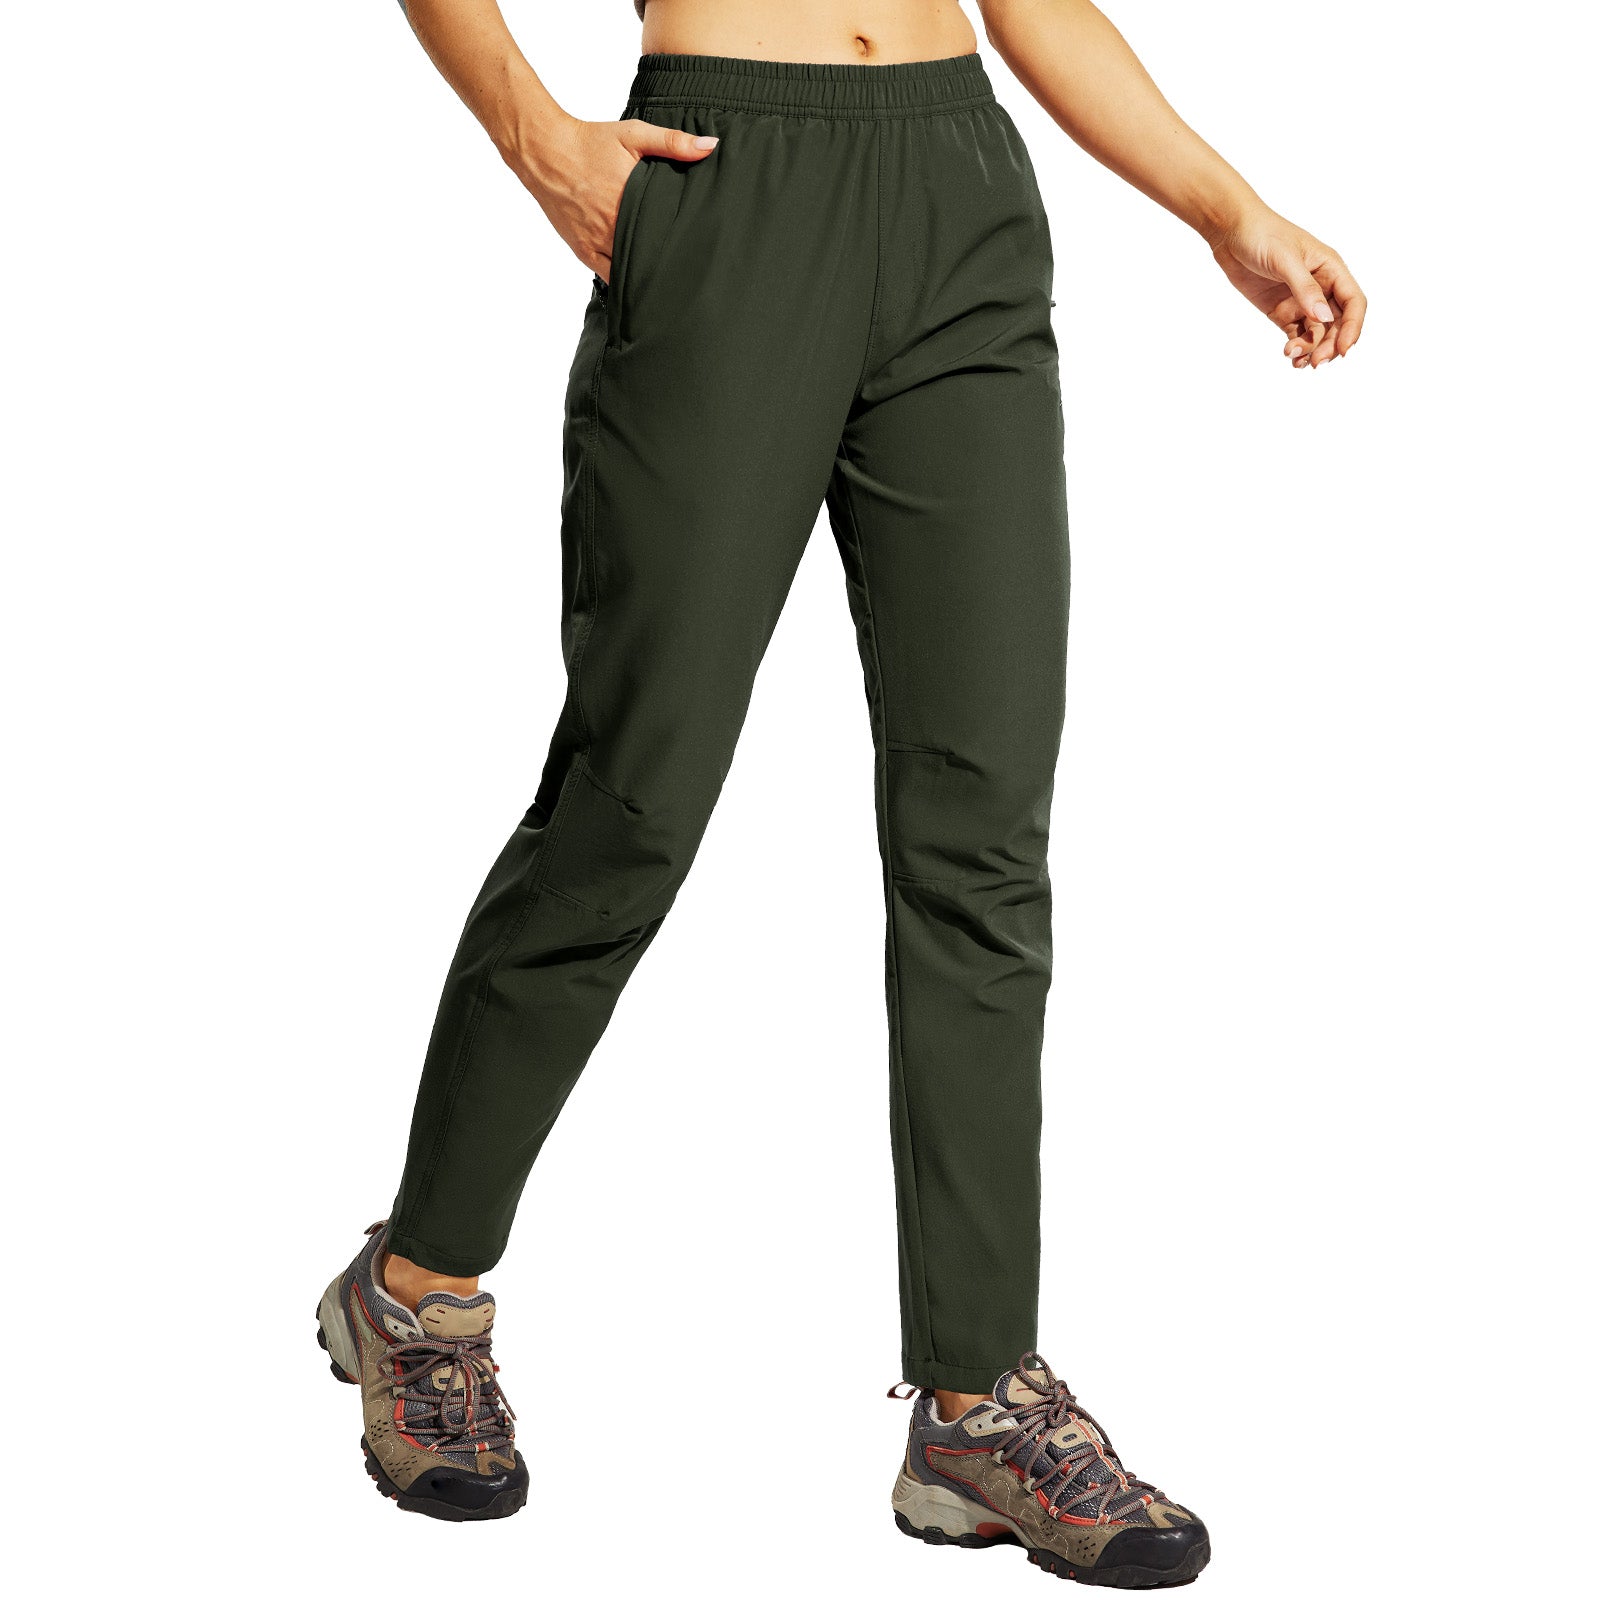 URBEST Women's Hiking Cargo Pants Outdoor Lightweight Quick Dry